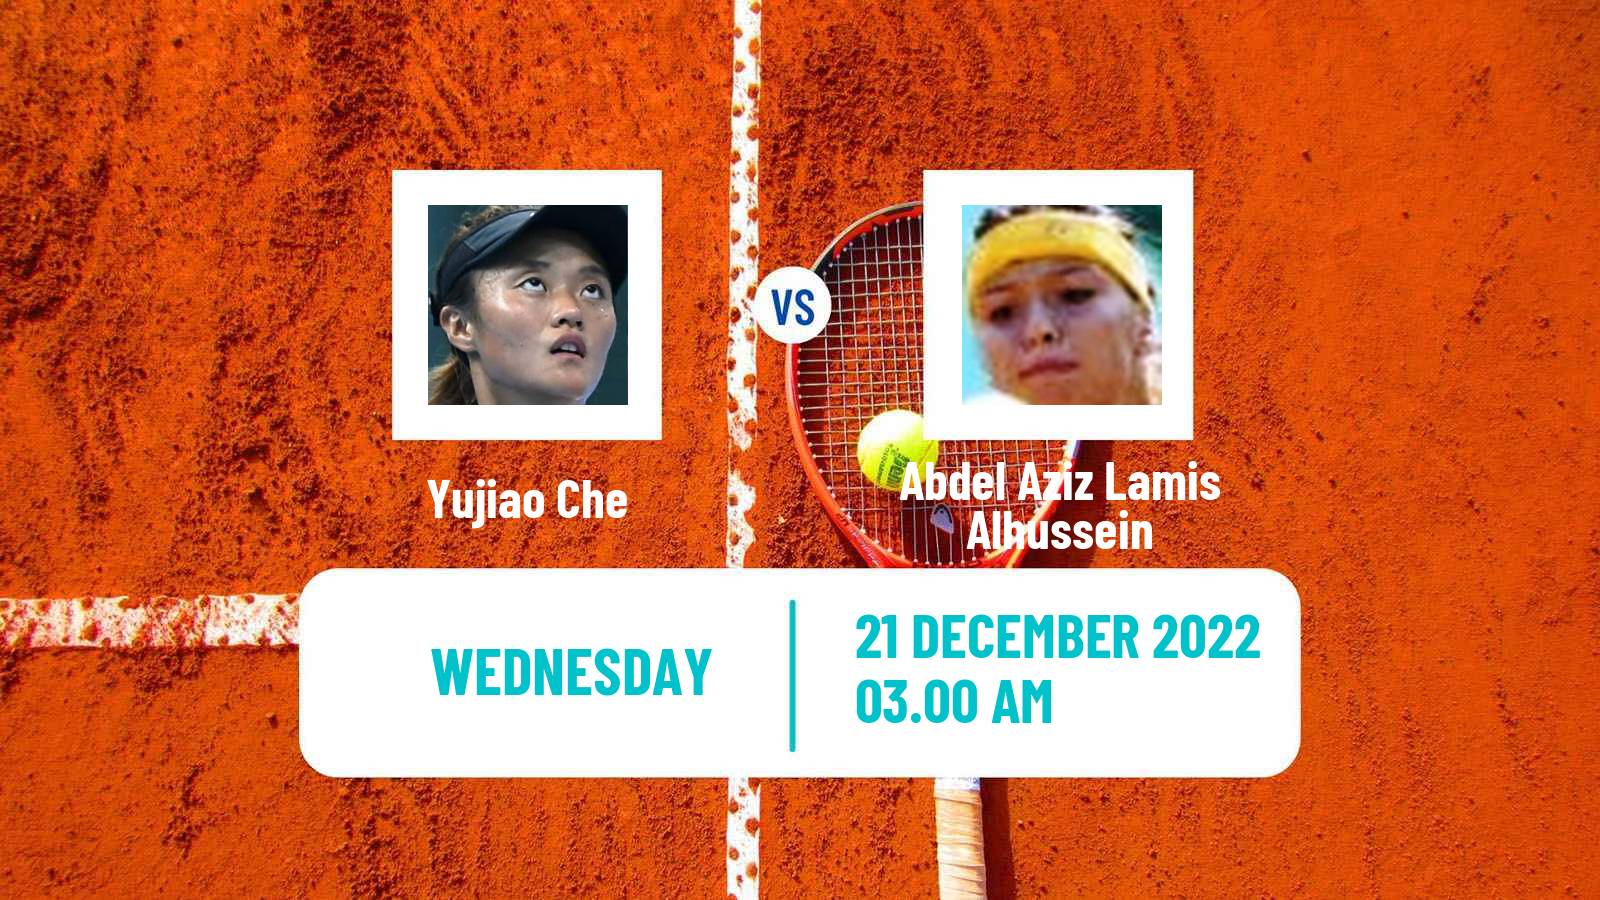 Tennis ITF Tournaments Yujiao Che - Abdel Aziz Lamis Alhussein